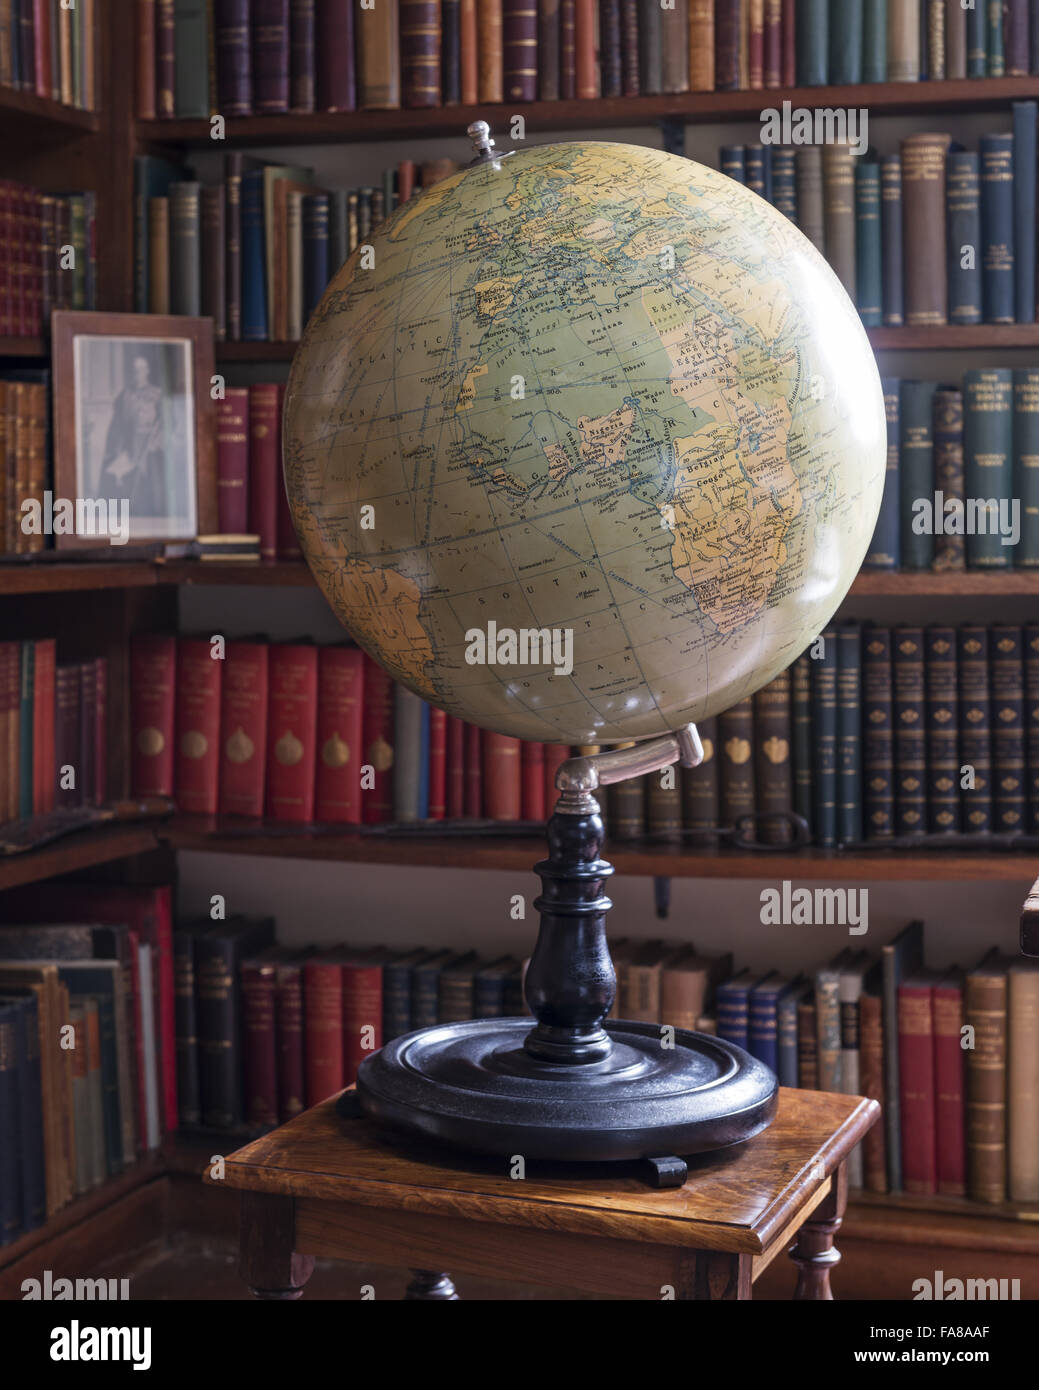 Un globe terrestre dans l'étude à Bateman's, East Sussex. Fabriqué par Philips. L'ébène et métal. Bateman's était la maison de l'écrivain Rudyard Kipling de 1902 à 1936. Banque D'Images